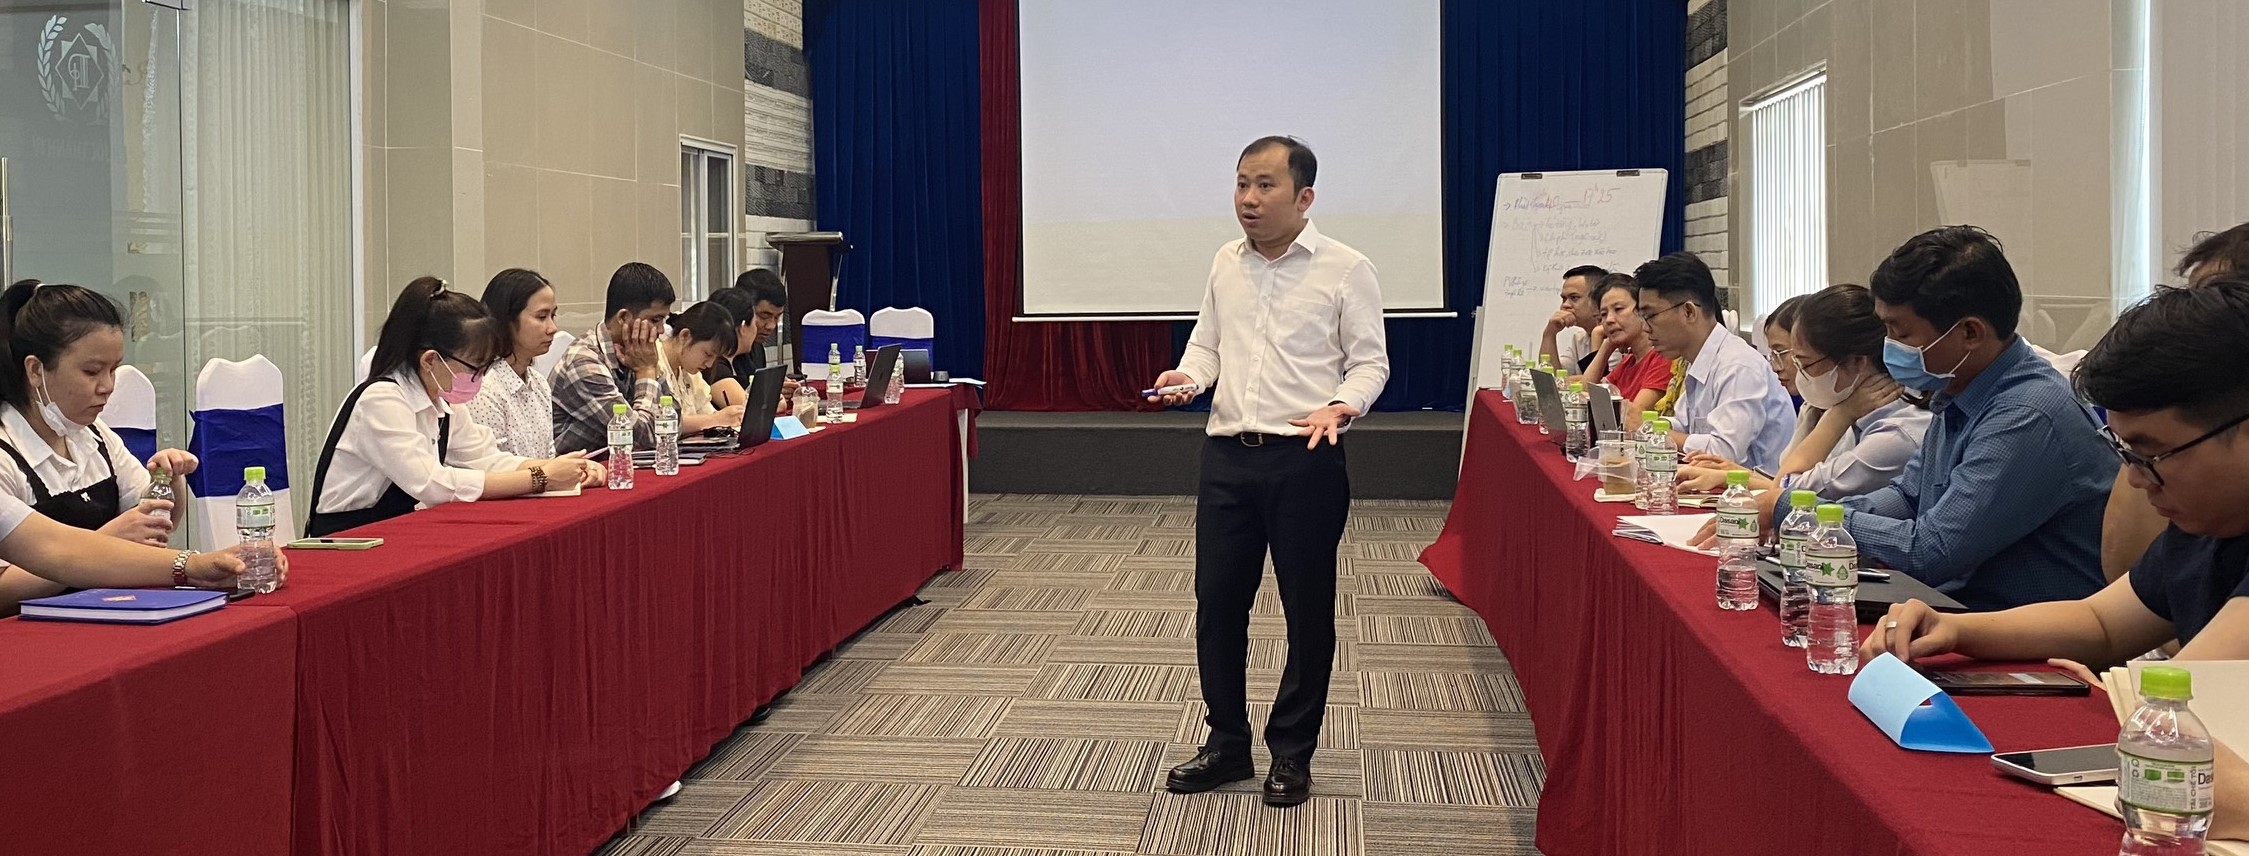  Lớp học do Nhà báo Nguyễn Phú Huân- Biên tập viên Đài Truyền hình Kỹ thuật số VTC giảng dạy.